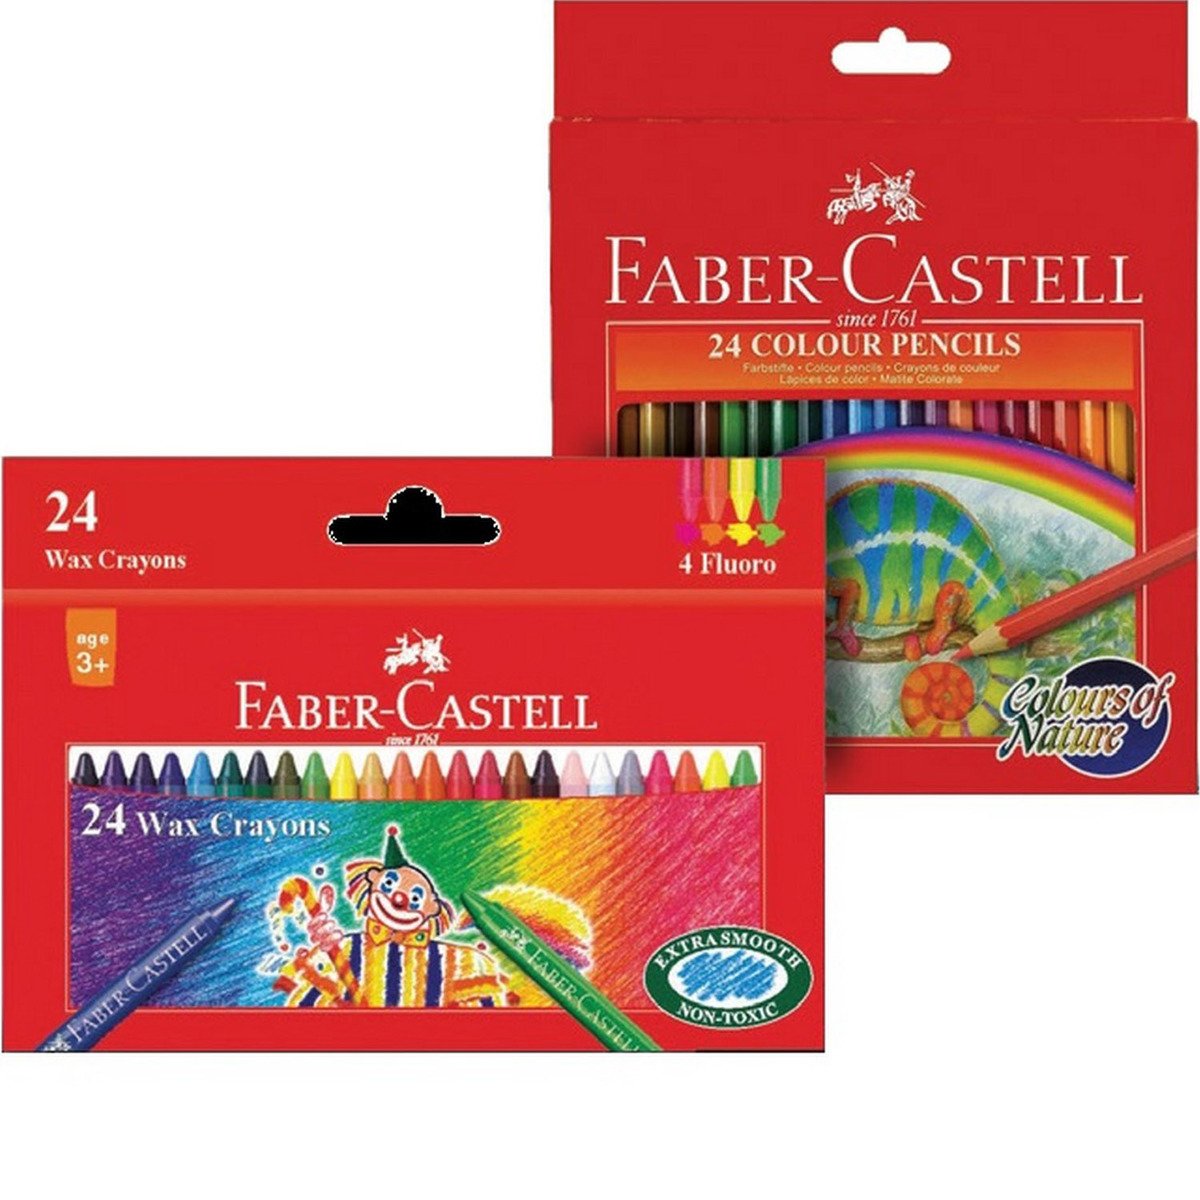 فايبر-كاستل مجموعة ألوان خشبية 24 حبة + ألوان شمعية 24 حبة